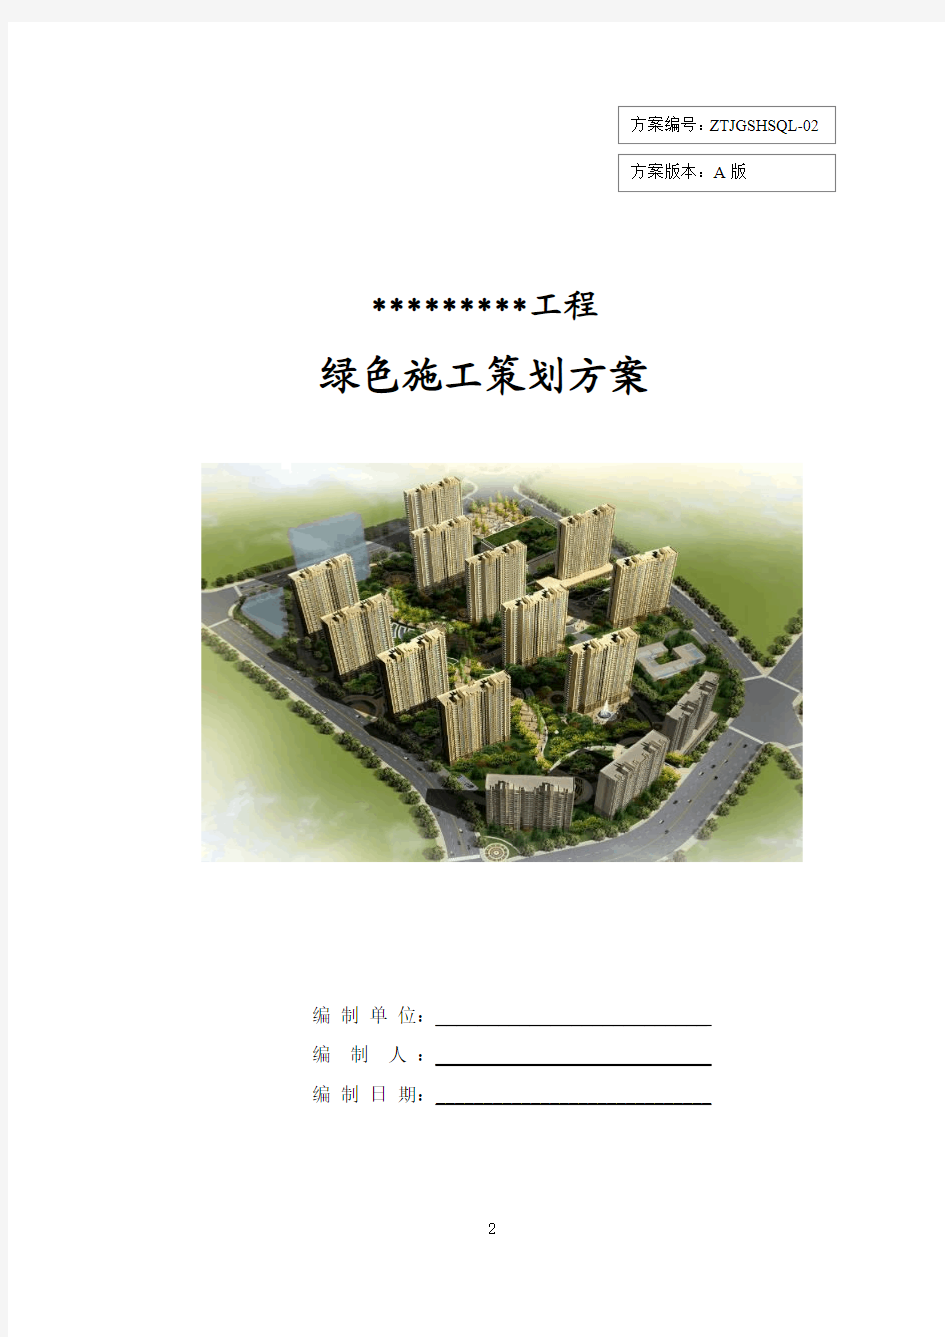 上海分公司绿色施工指导性方案 (结合石泉路工程)----红色部分未修改整理